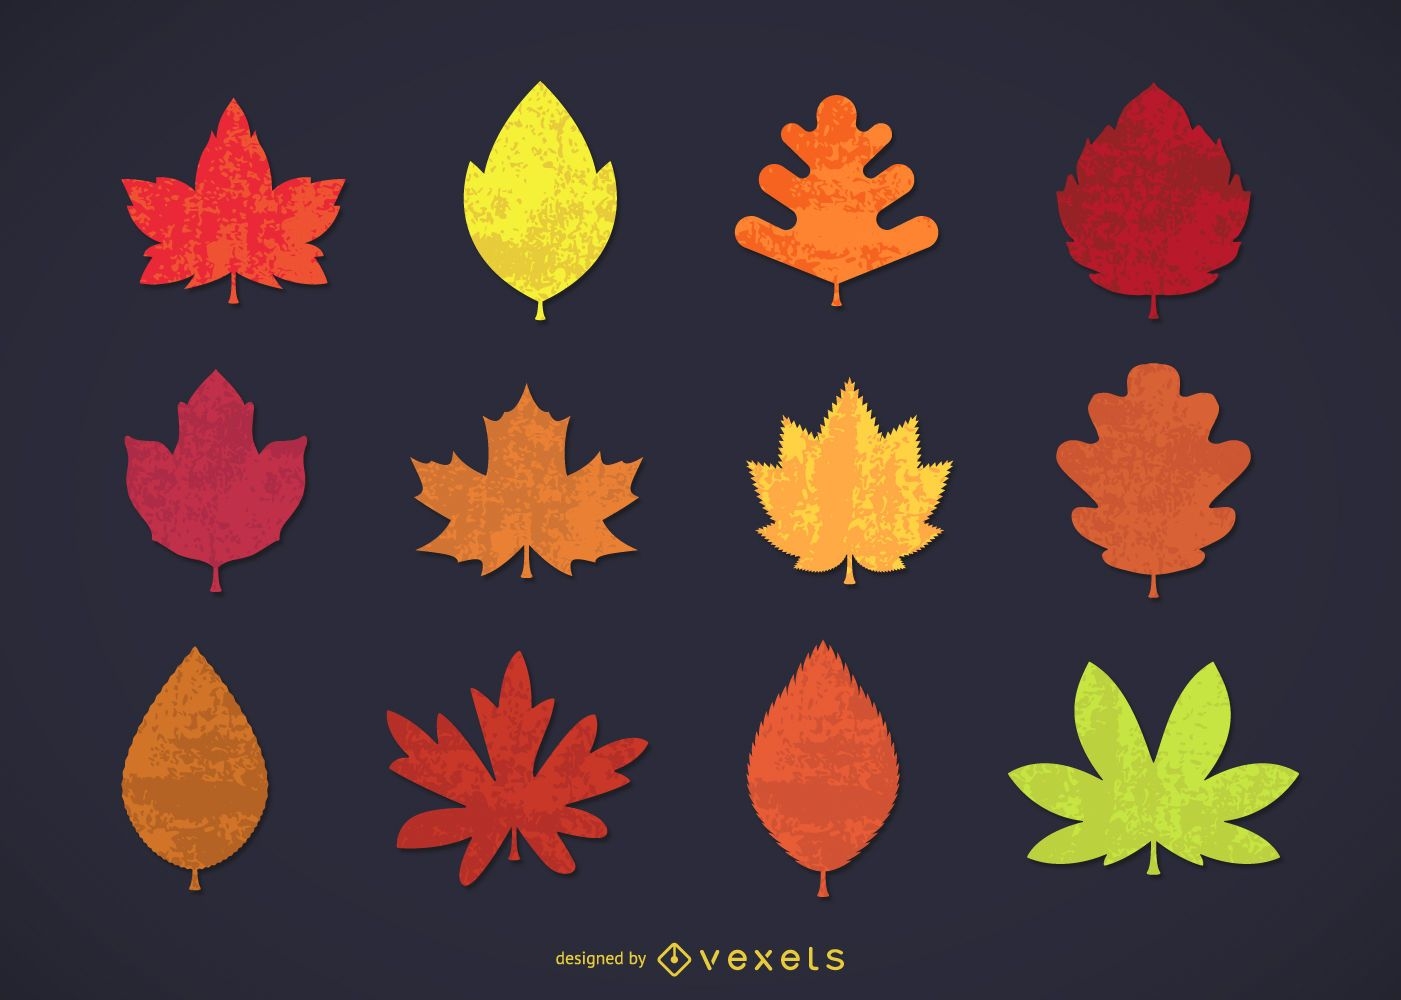 Coleção de folhas de outono